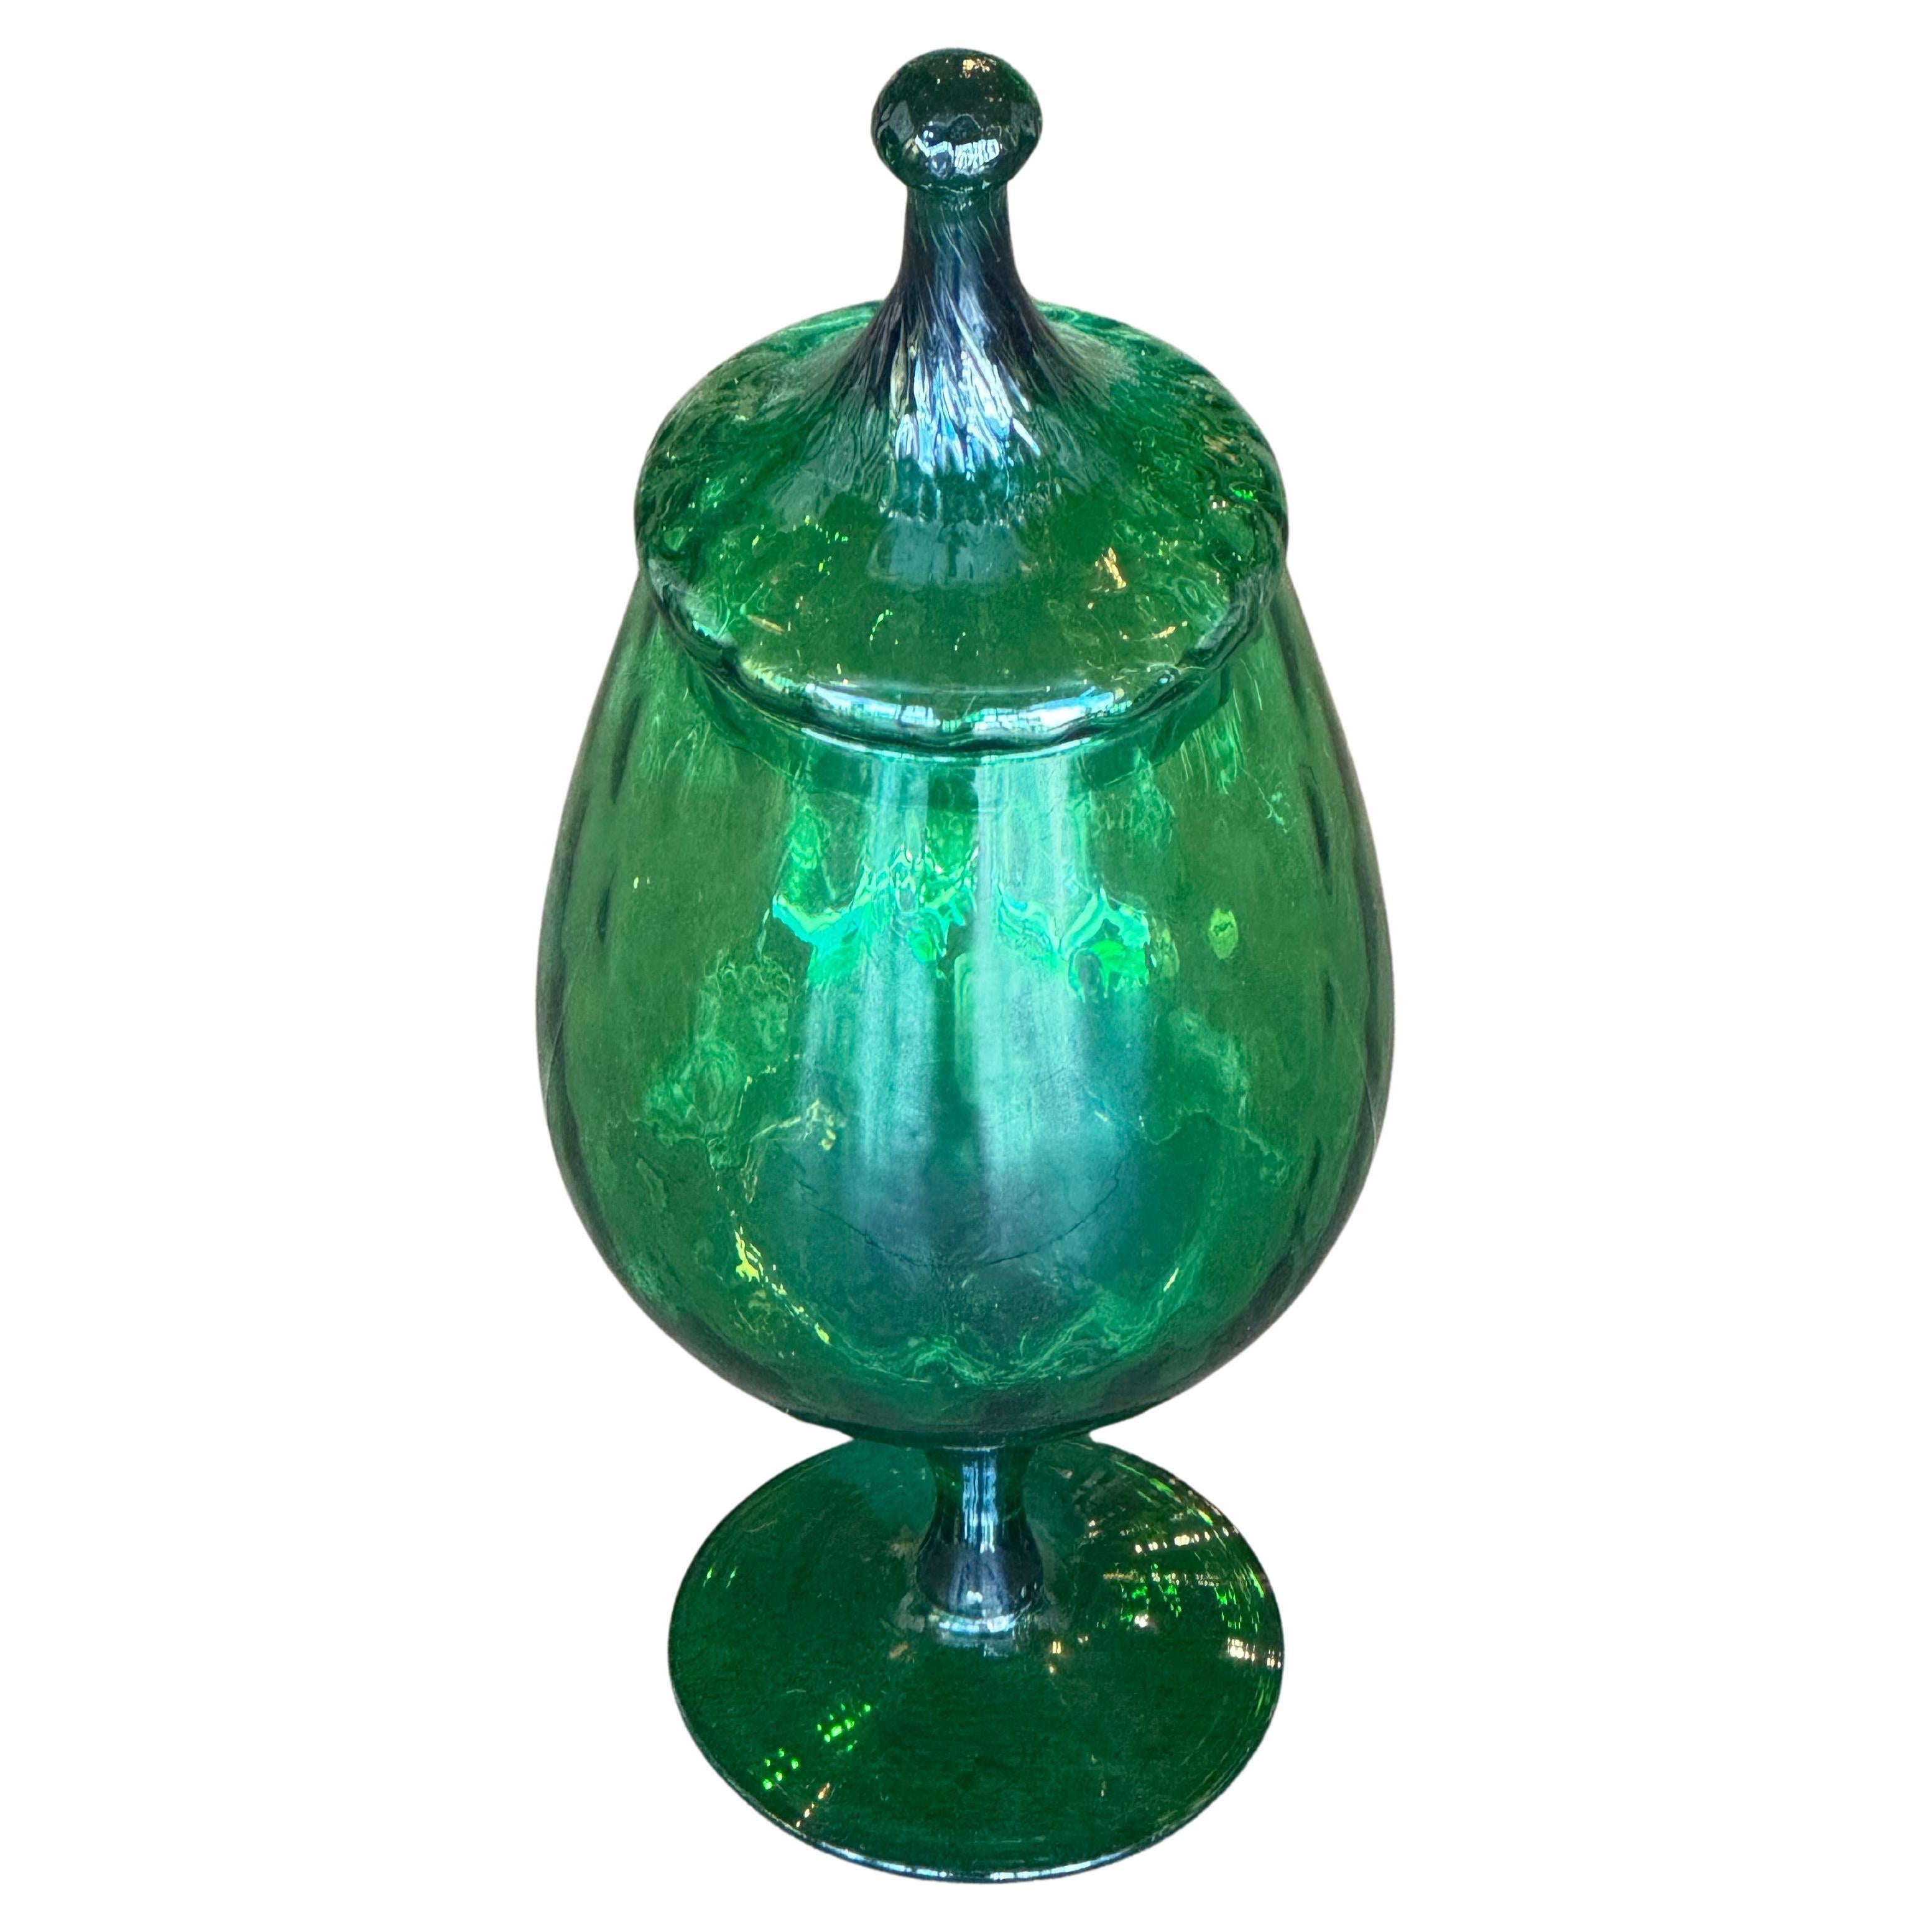 Carafe marocaine en verre vert émeraude soufflé à la main